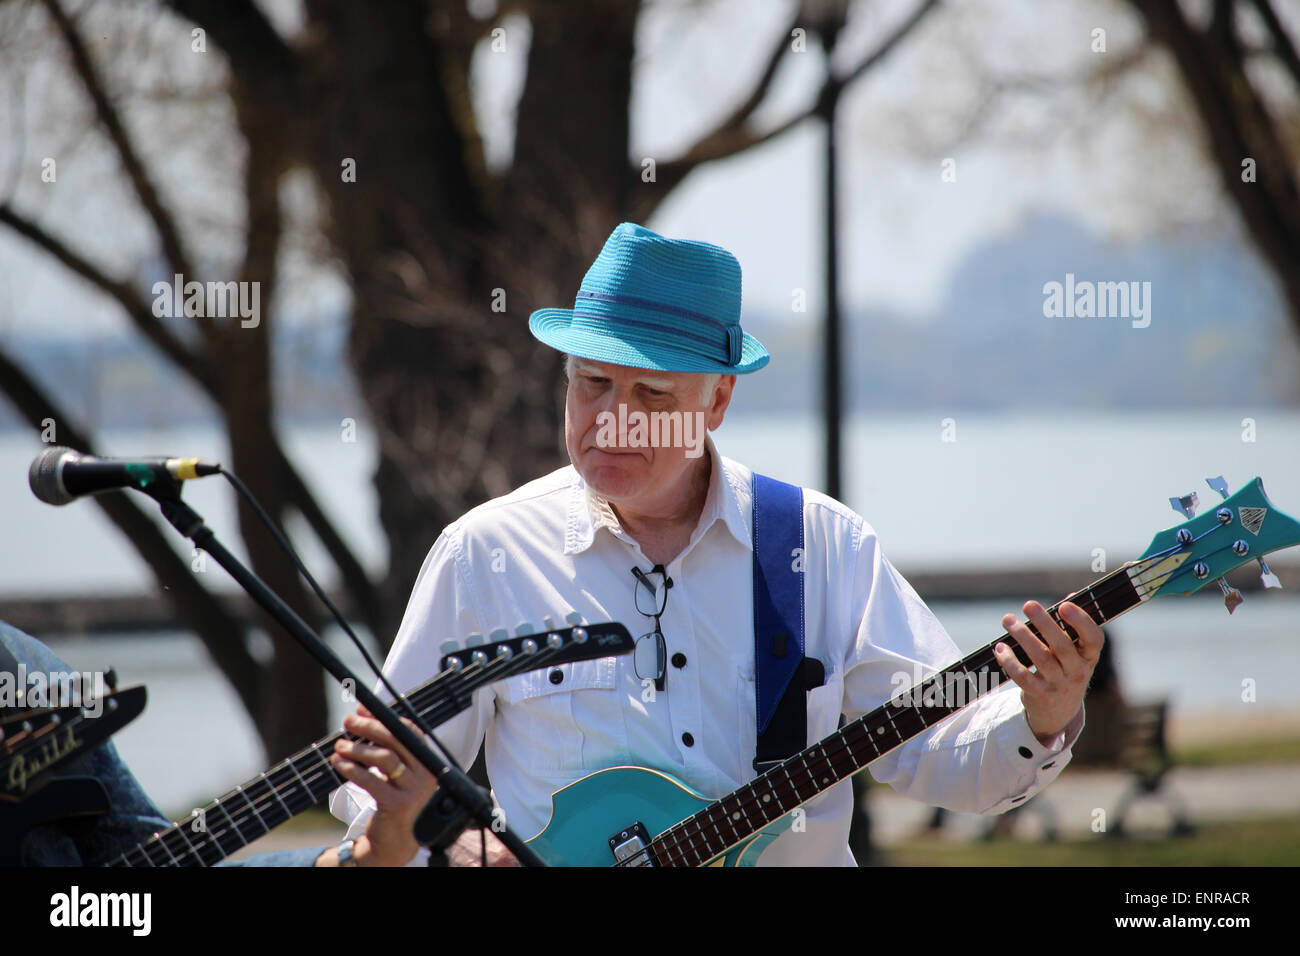 Un homme âgé portant un musicien light blue hat jouant de la guitare sur un trottoir. Banque D'Images